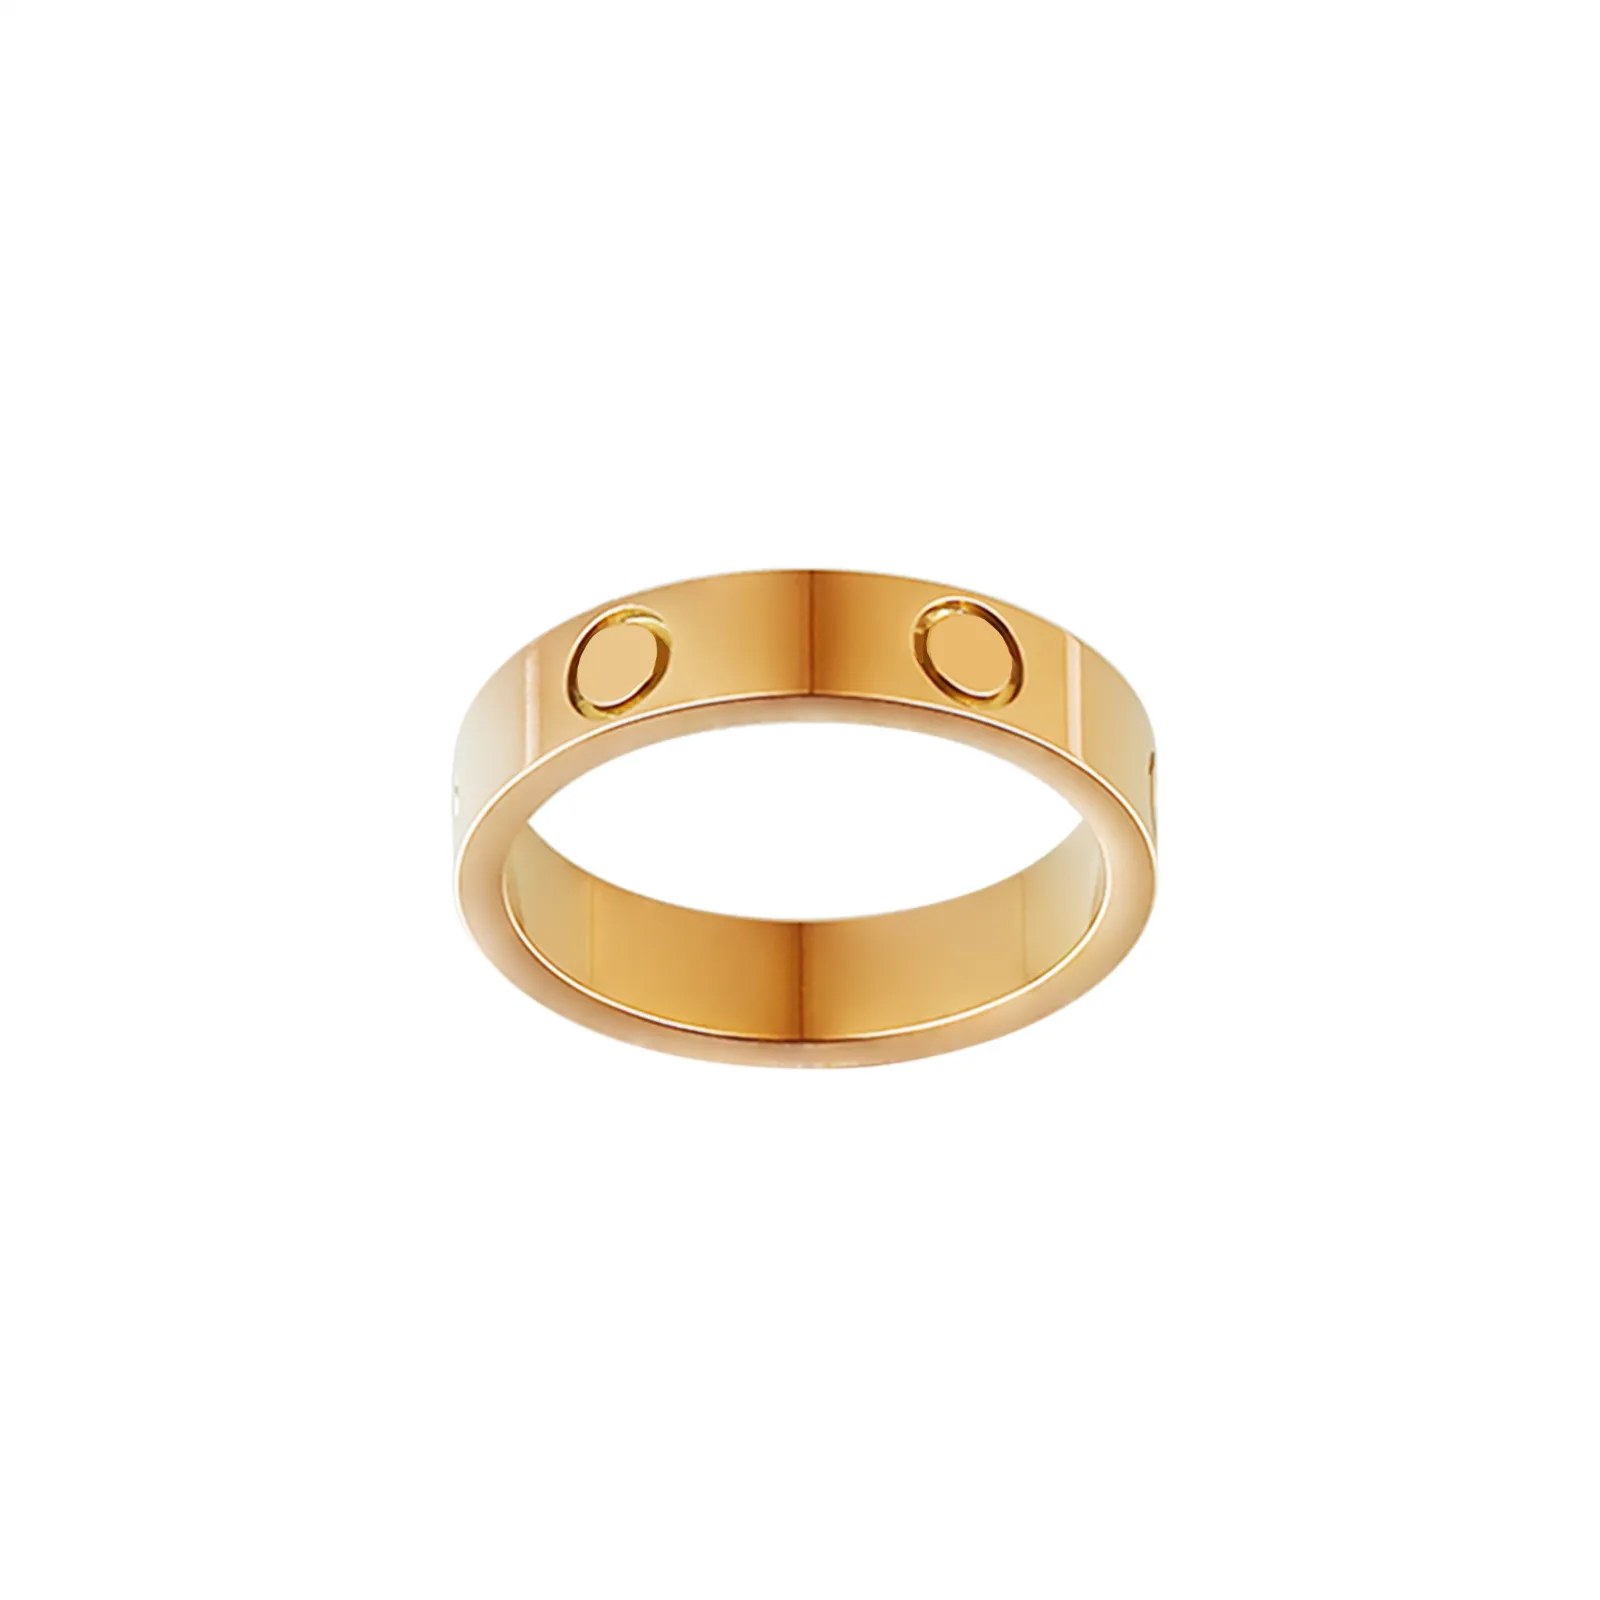 4mm 5mm 6mm tytan stal srebrny miłość pierścionek dla kobiety mężczyzna kobiet różowe złoto srebrny kryształ diament Projektant miłośników biżuterii pierścionki dla par prezent rozmiar 5-11 925s CZ